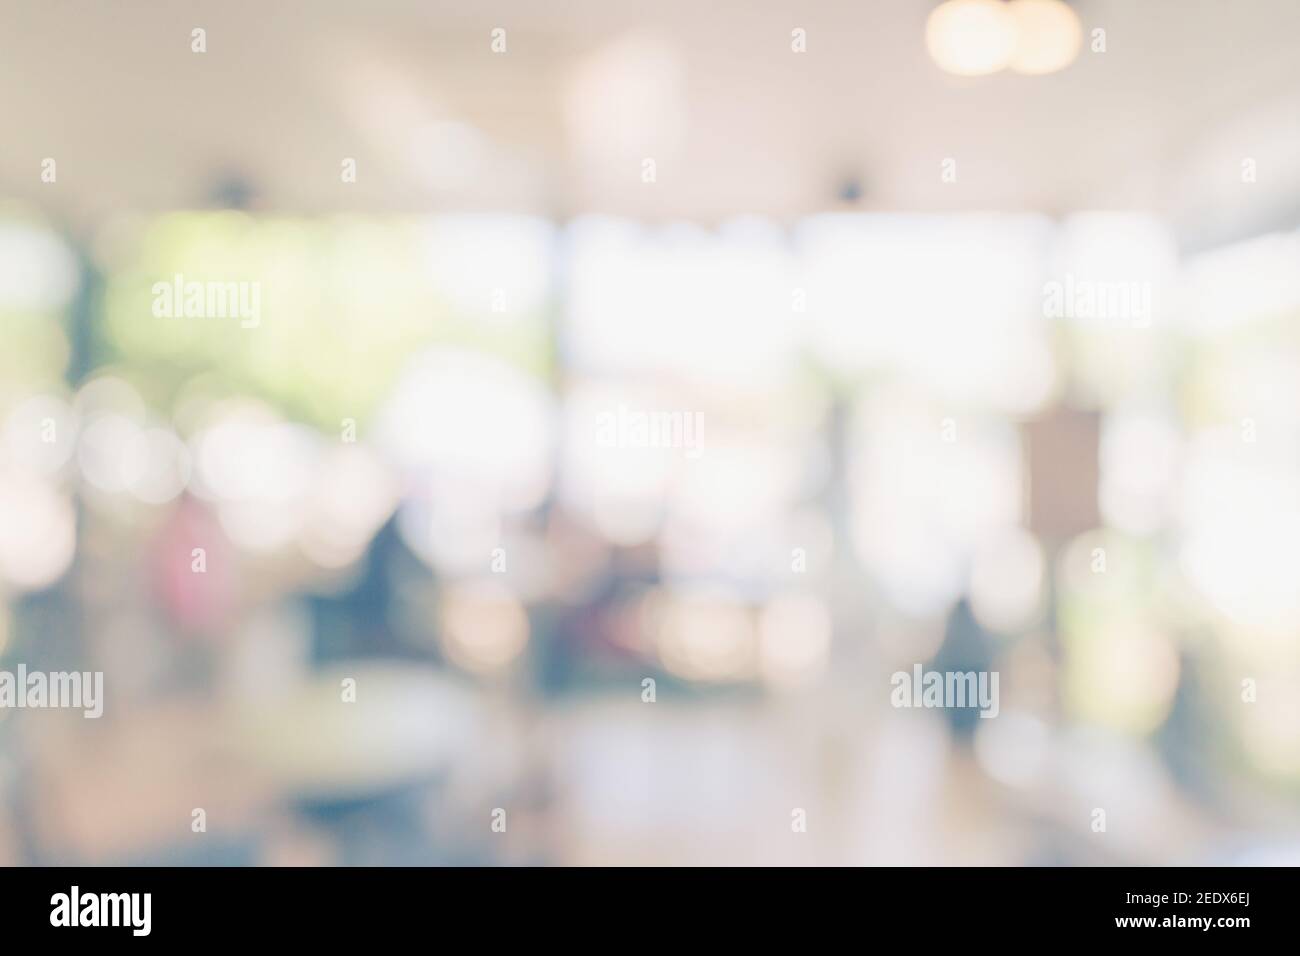 Tabella di luce offuscata astratta in caffetteria e bar con sfondo bokeh. Modello di visualizzazione del prodotto. Foto Stock